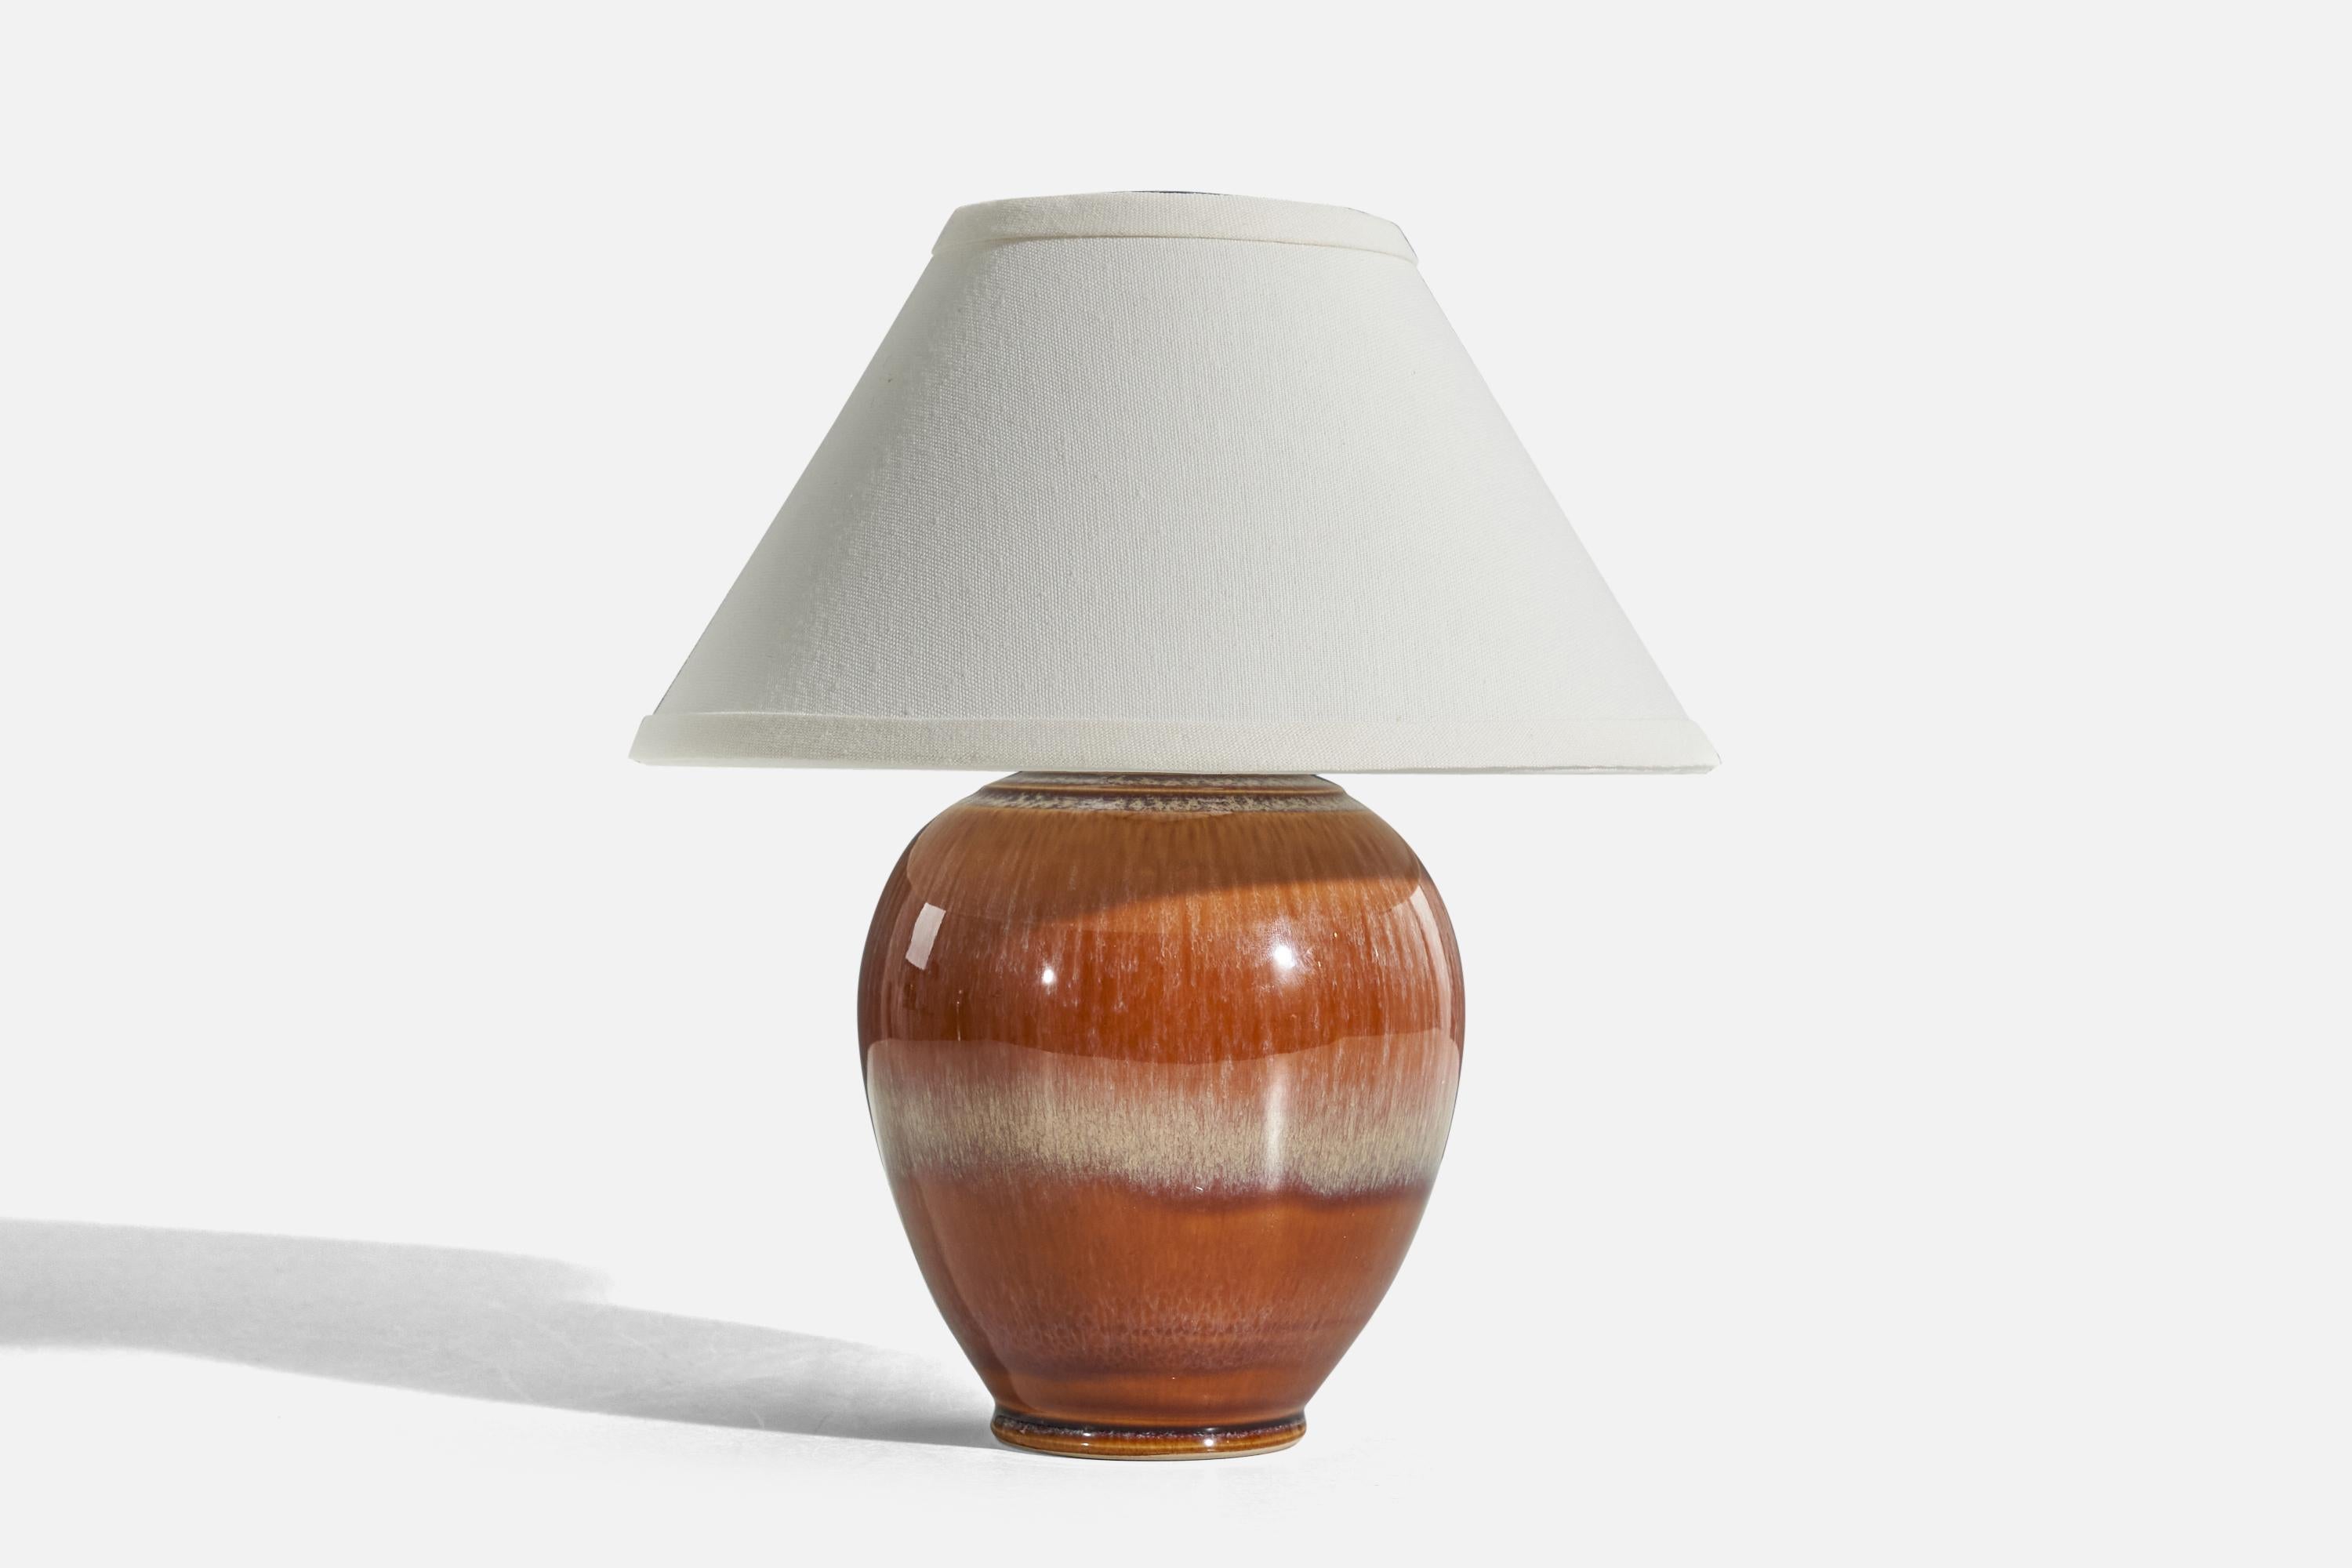 Lampe de table en grès émaillé orange conçue et produite par un designer danois, Danemark, vers les années 1960.

Vendu sans abat-jour. 
Dimensions de la lampe (pouces) : 9 x 5,87 x 5,87 (H x L x P)
Dimensions de l'abat-jour (pouces) : 4.25 x